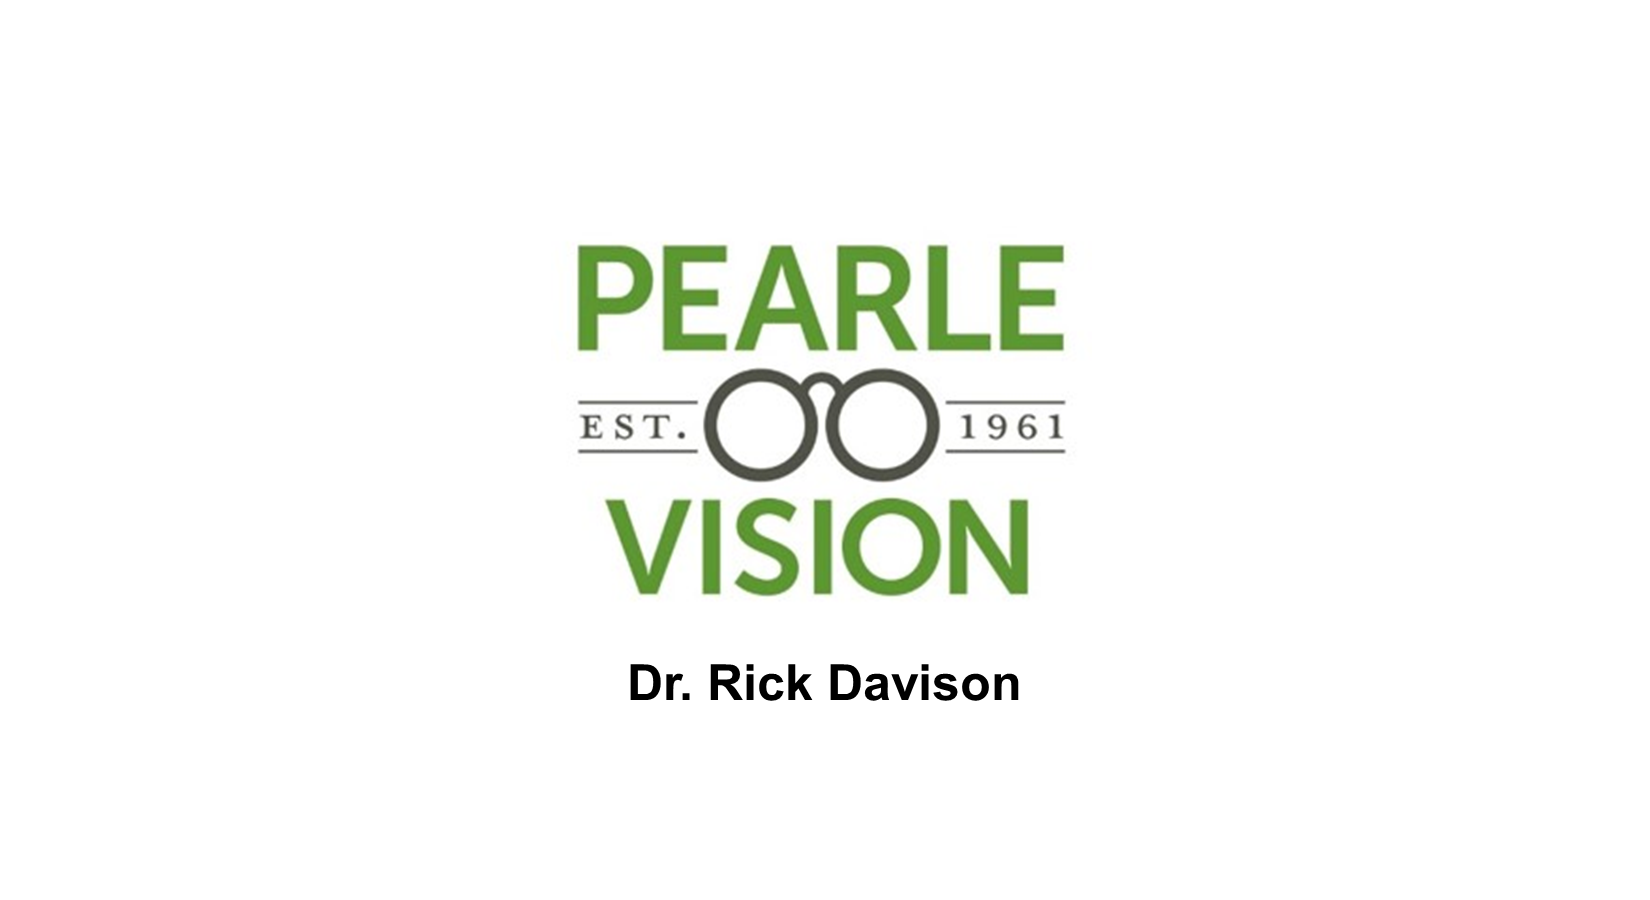 Pearle Vision, Dr. Rick Davison